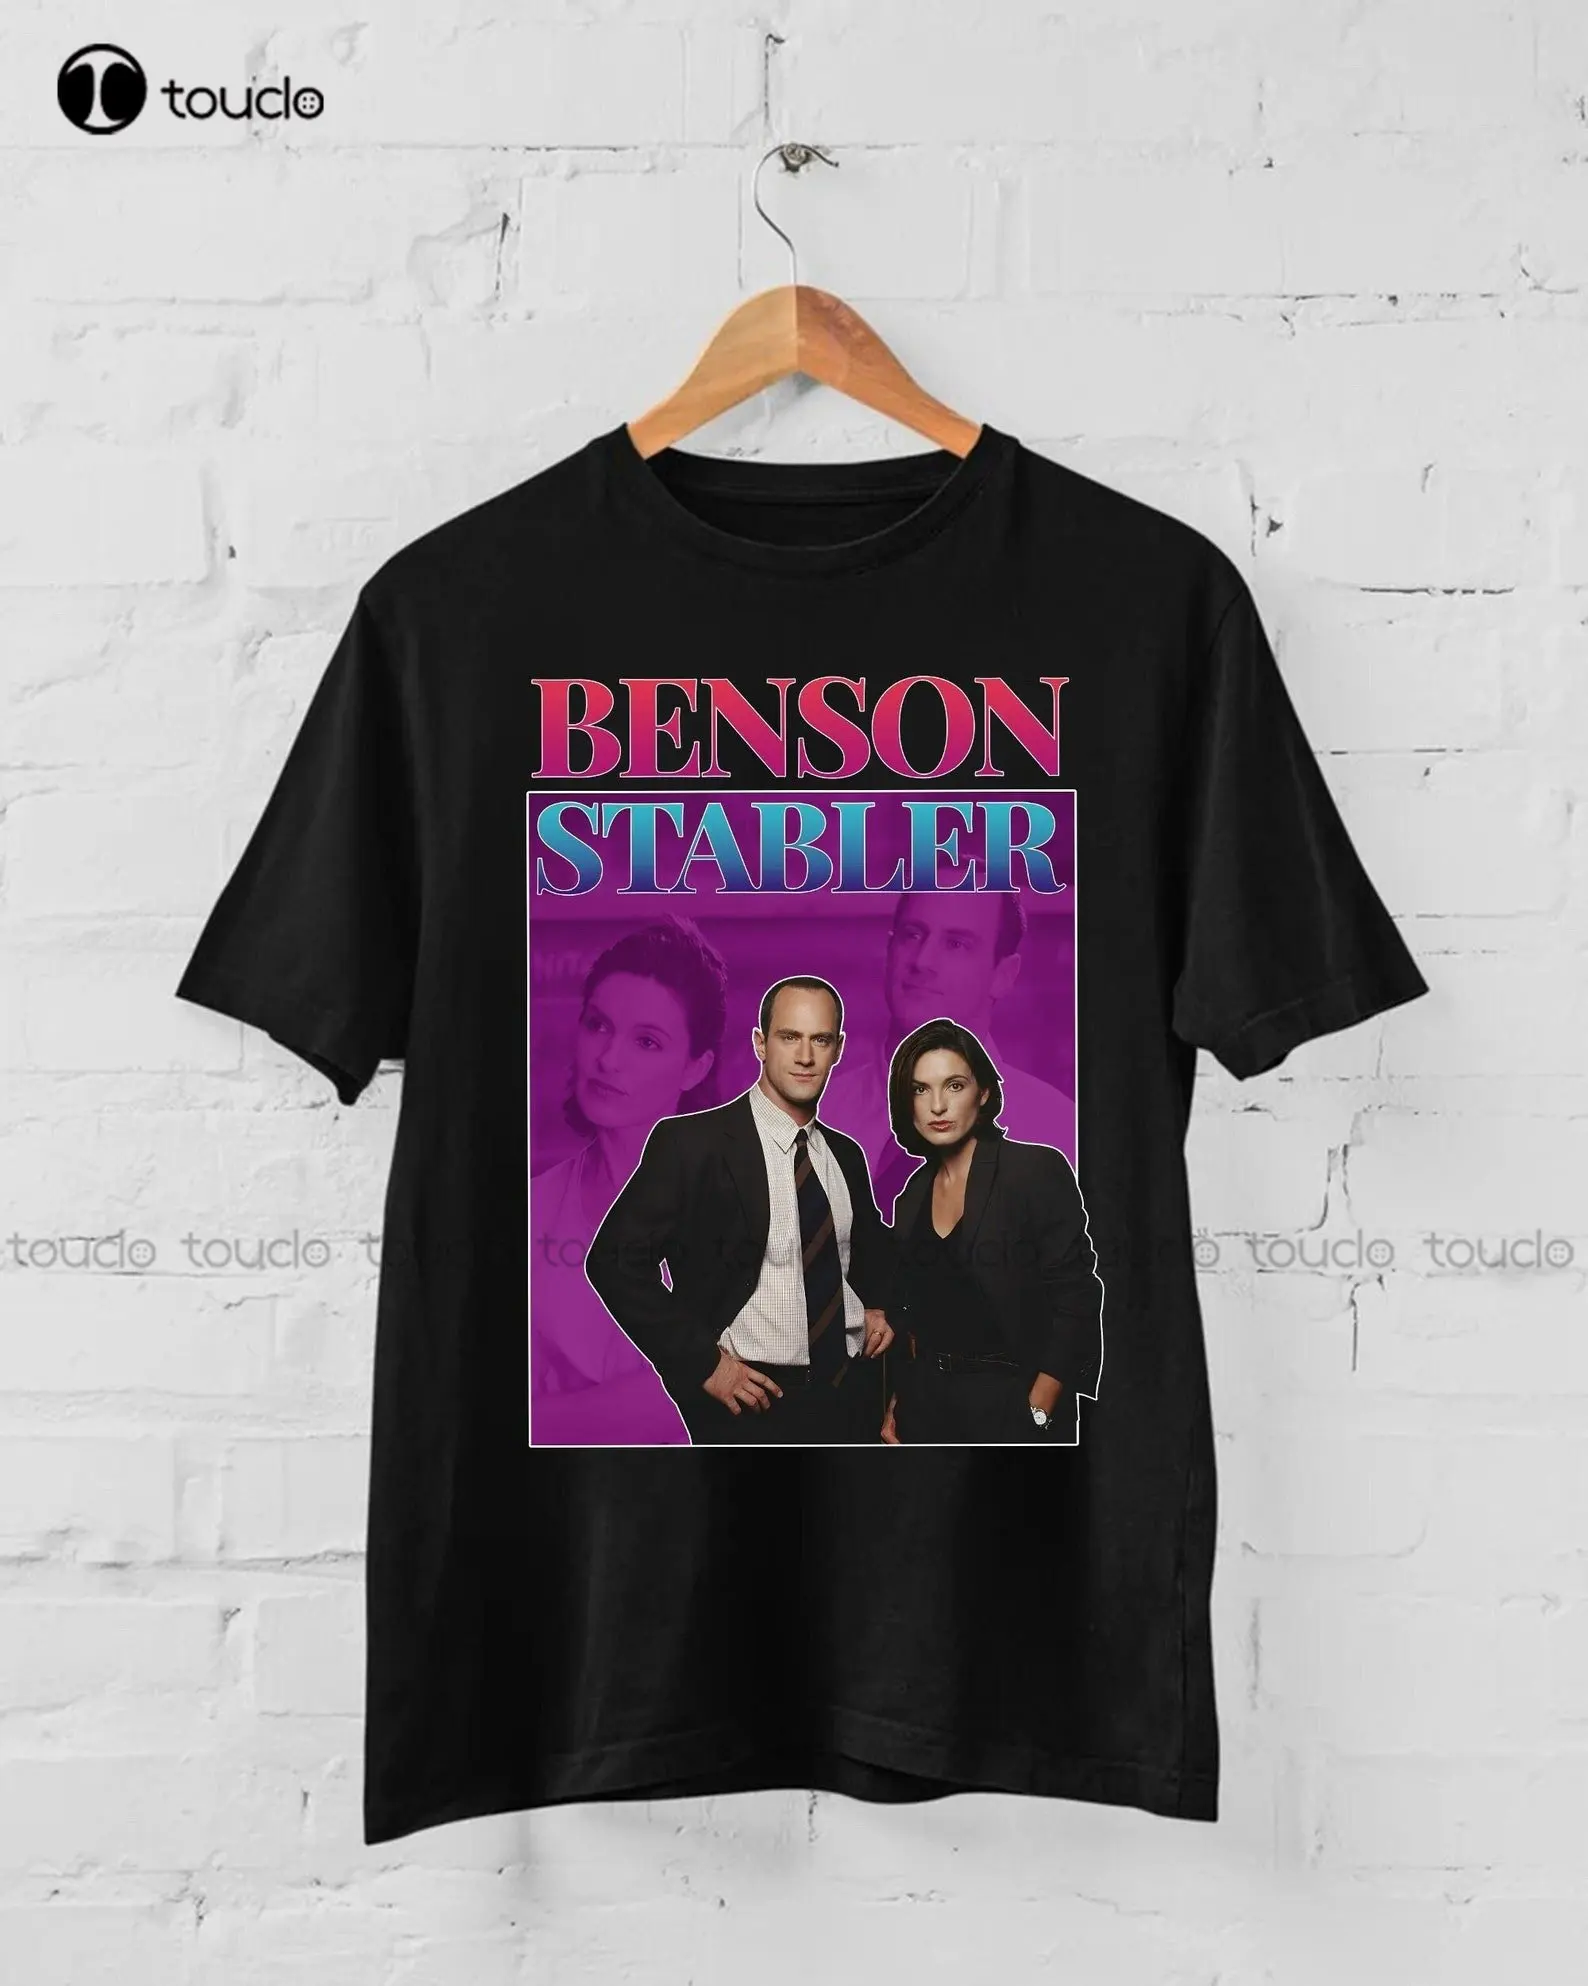 

Футболка Benson Stabler с надписью и заказом, футболка в стиле 90-х, футболка большого размера, индивидуальная футболка с цифровой печатью для подростков, унисекс